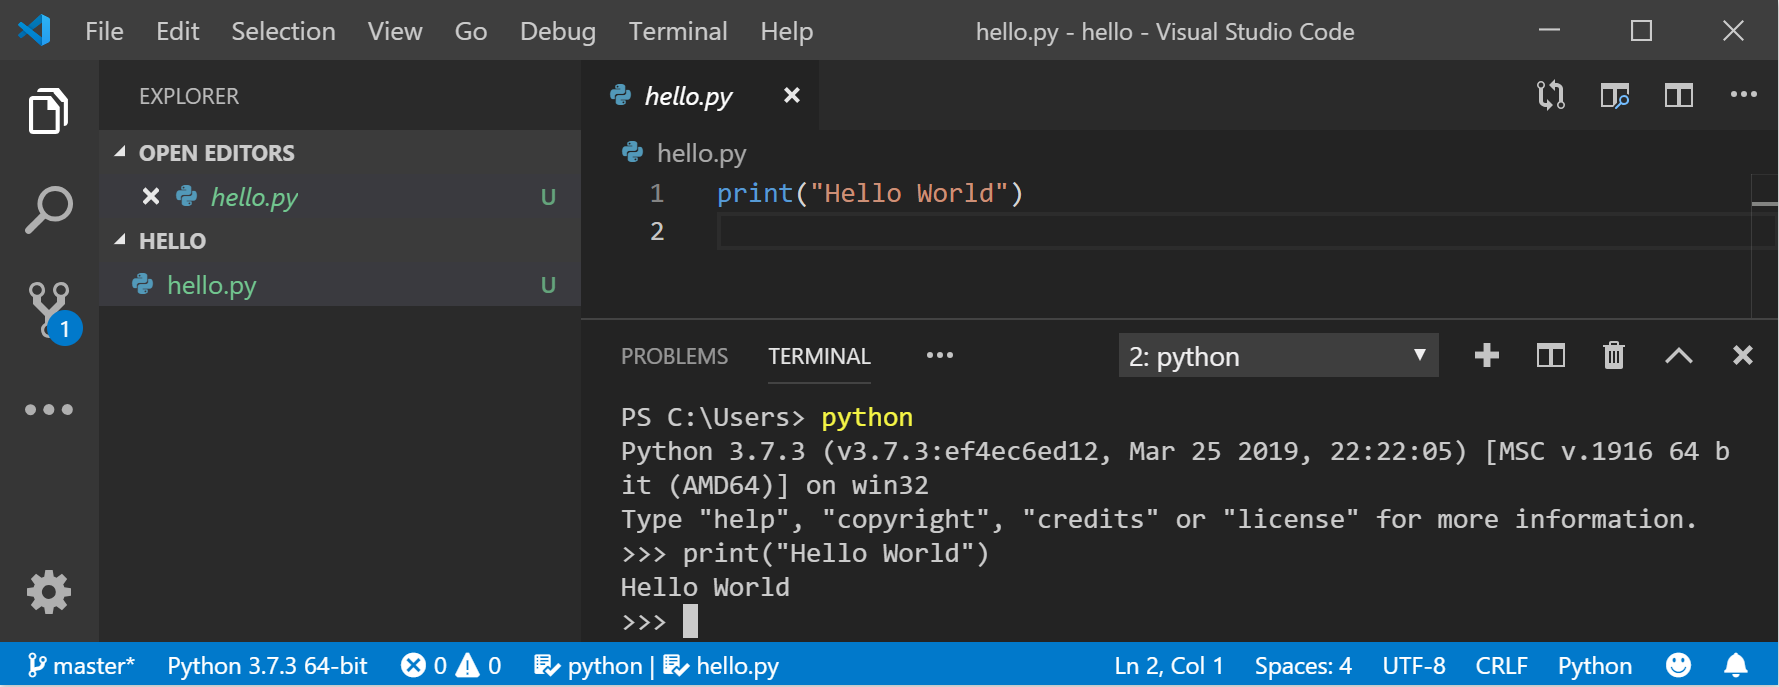 Uso de Python para scripts e automação | Microsoft Learn